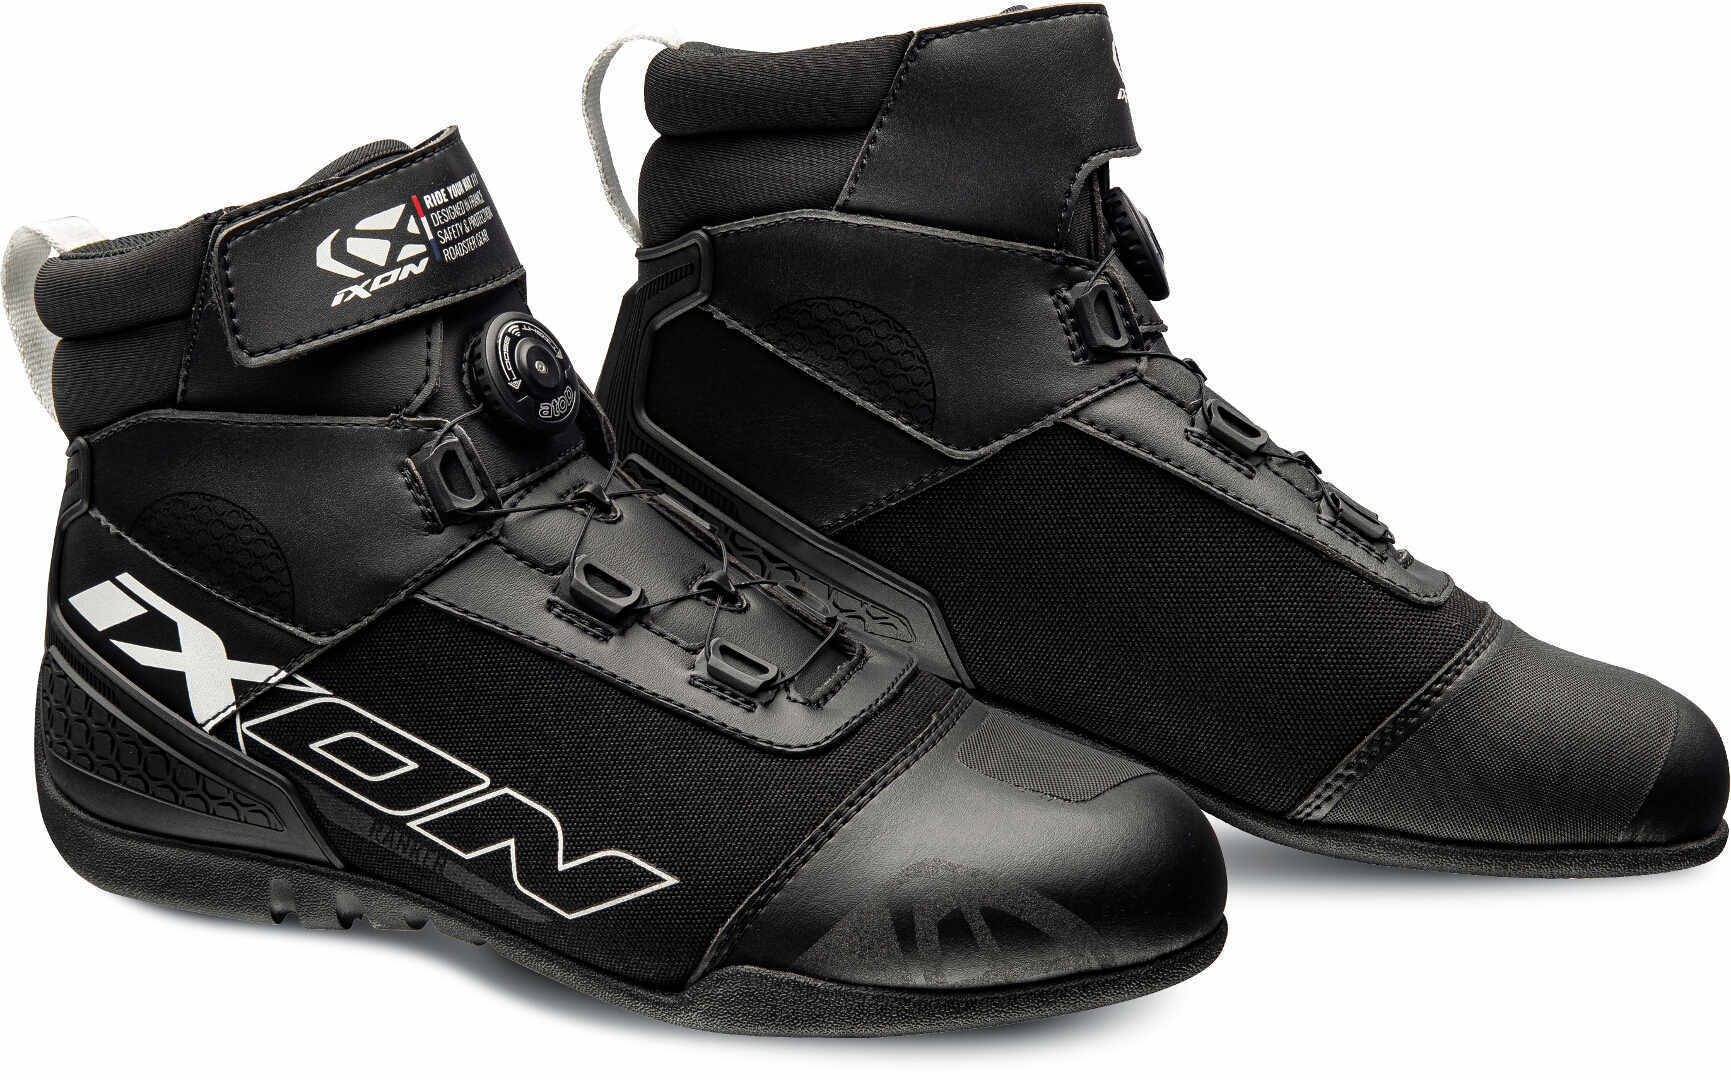 Ixon Ranker Zapatos de motocicleta - Negro Blanco (42)